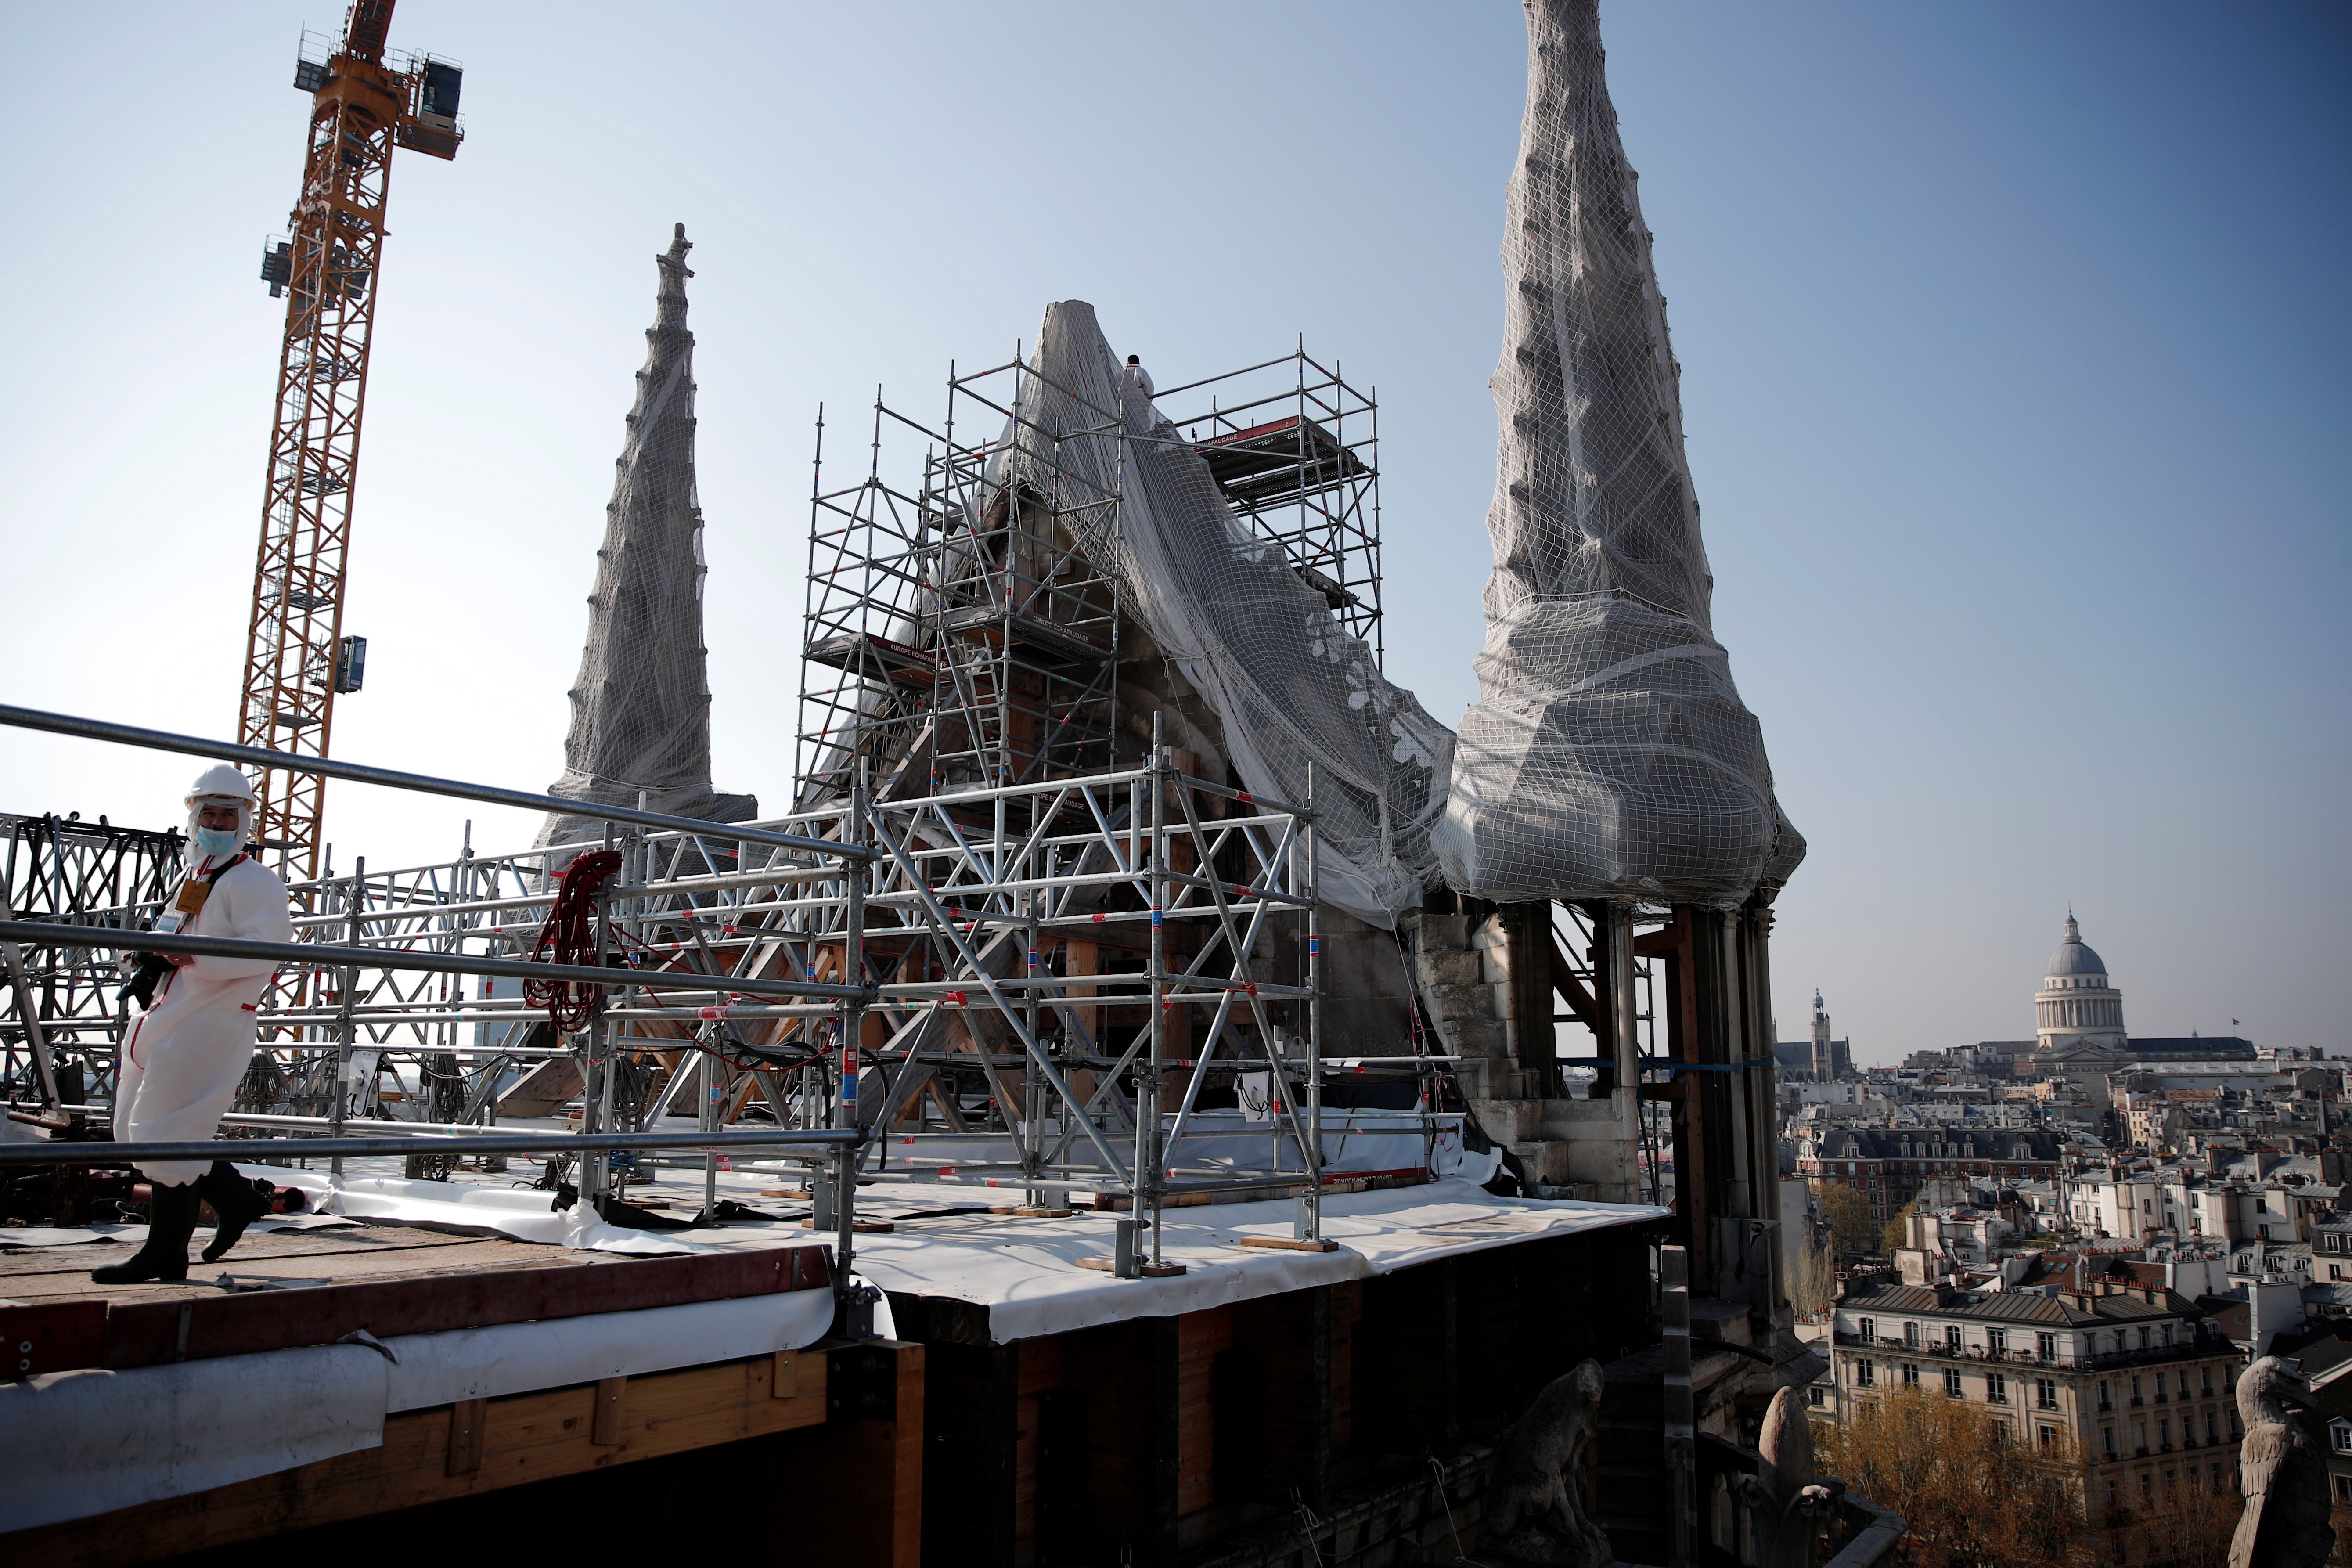 Corporation Twinkle pink Ma két éve, hogy leégett a párizsi Notre-Dame, így néz ki most - fotók -  Blikk